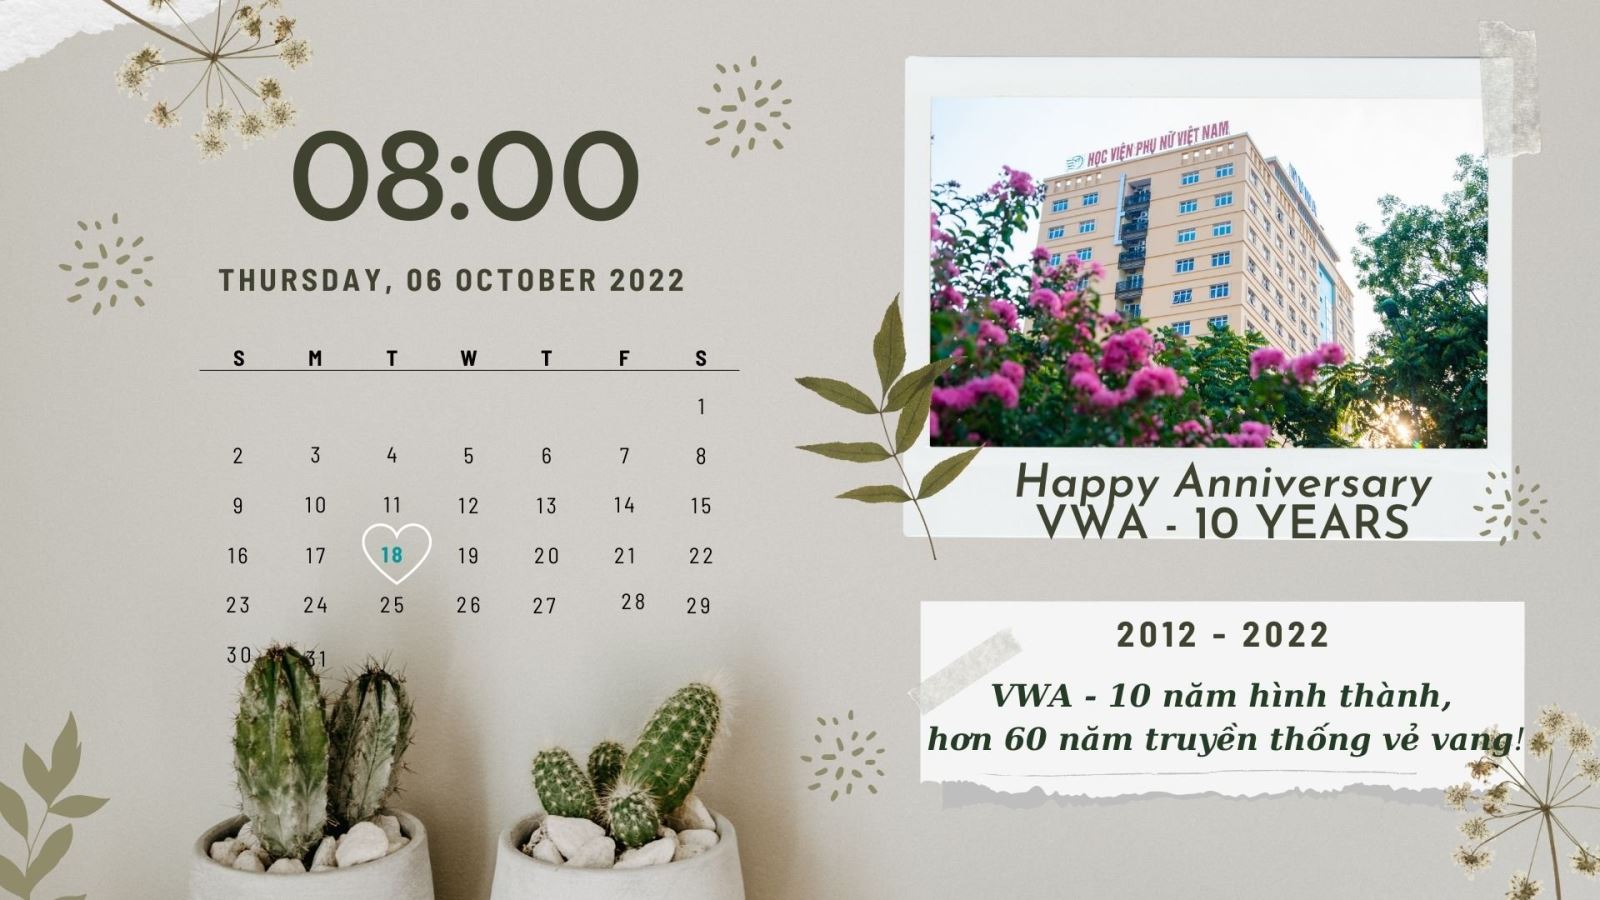 Lễ kỉ niệm 10 năm thành lập Học viện và khai giảng năm học 2022 - 2023 | Học viện Phụ nữ Việt Nam